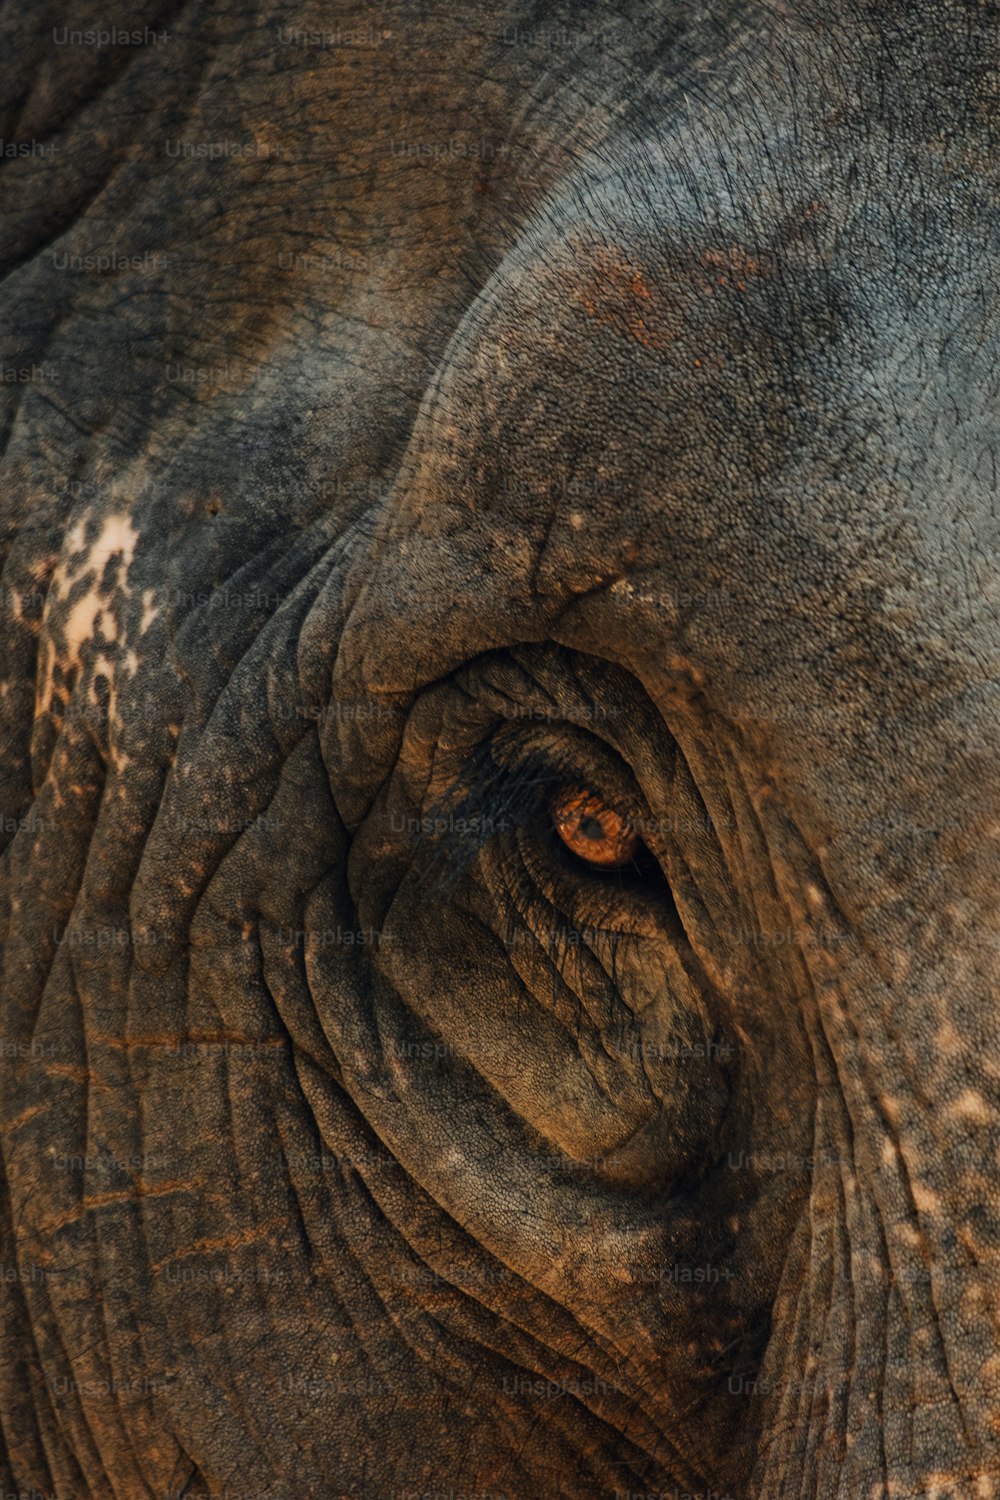 Un primo piano di un occhio di elefante con le rughe